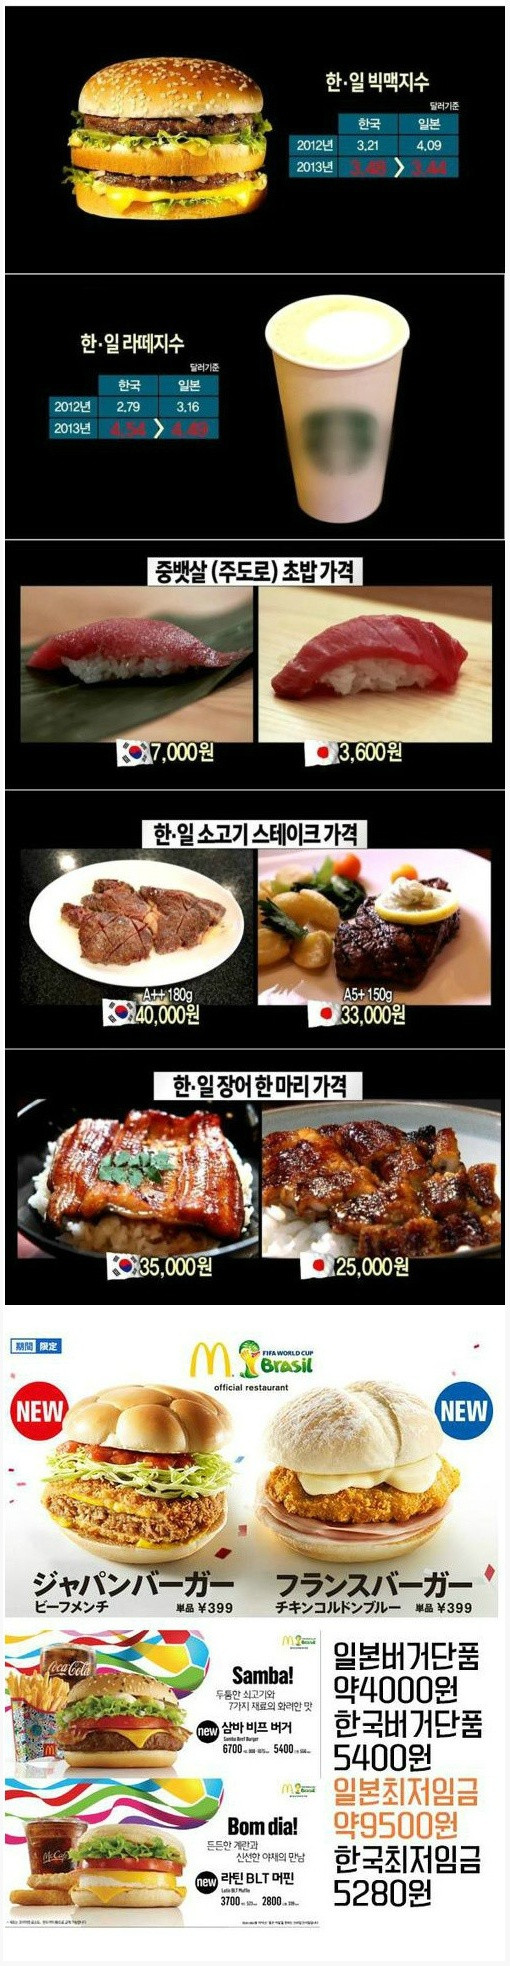 한국과 일본 물가 비교.jpg.jpg